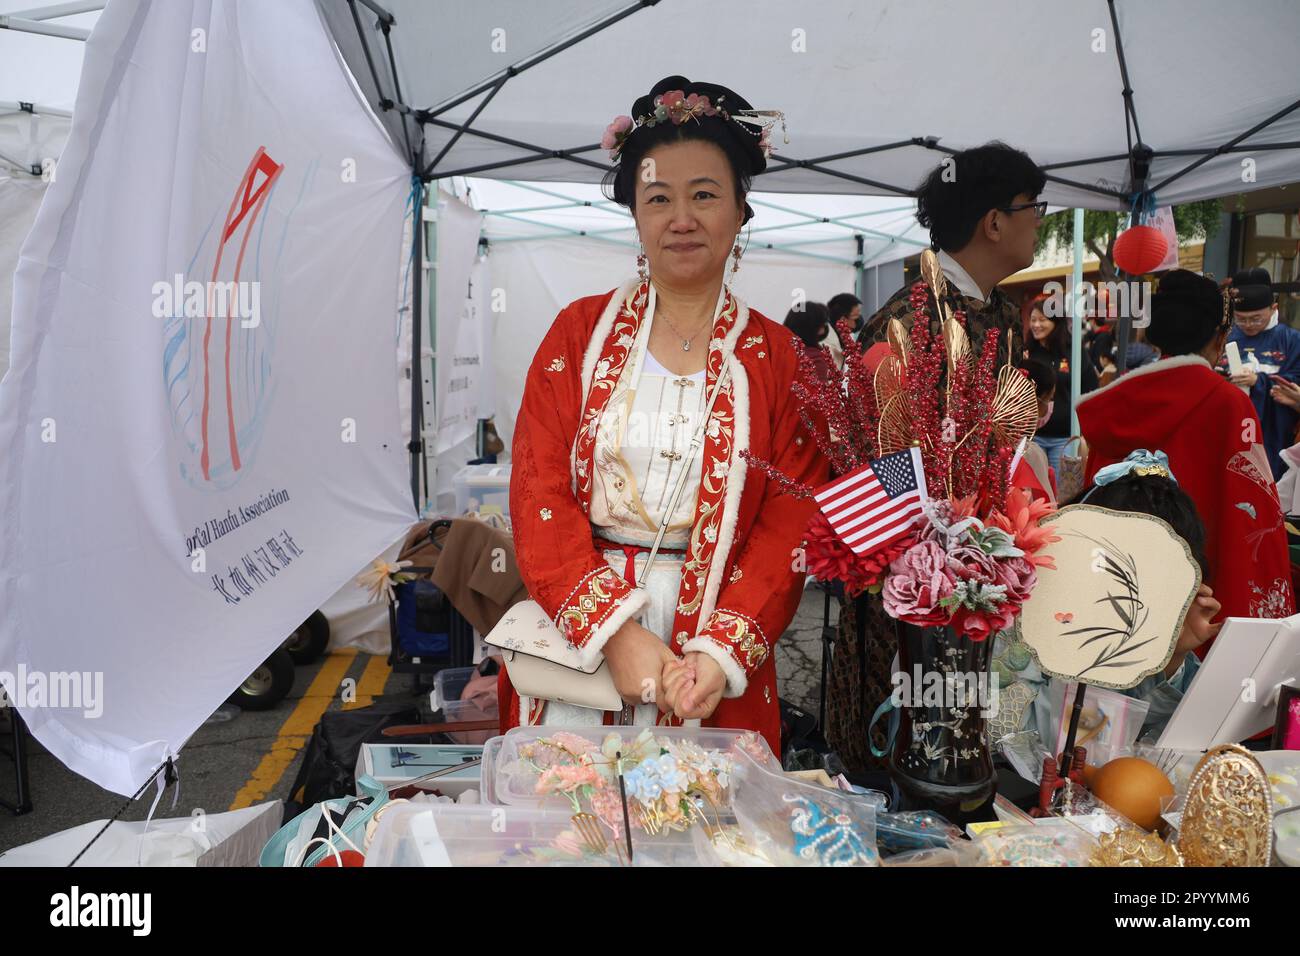 1-15-2023: Millbrae, California: Donna anziana in abbigliamento tradizionale al festival cinese Lunar Day Millbrae California Foto Stock